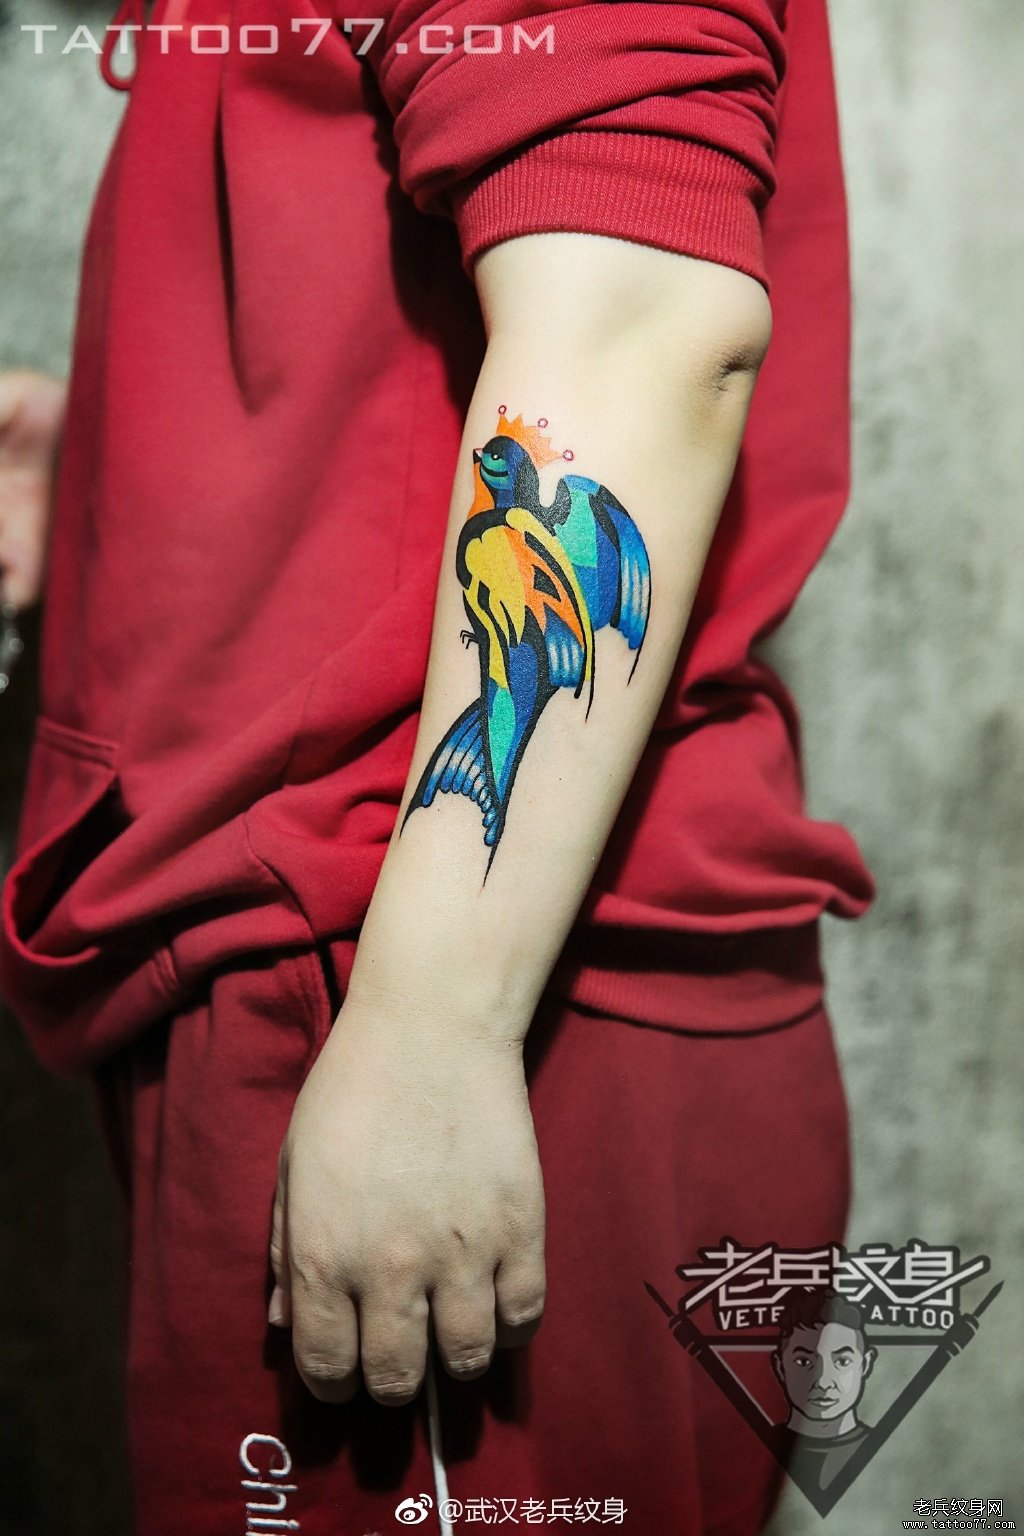 手部皇冠燕子纹身图案作品